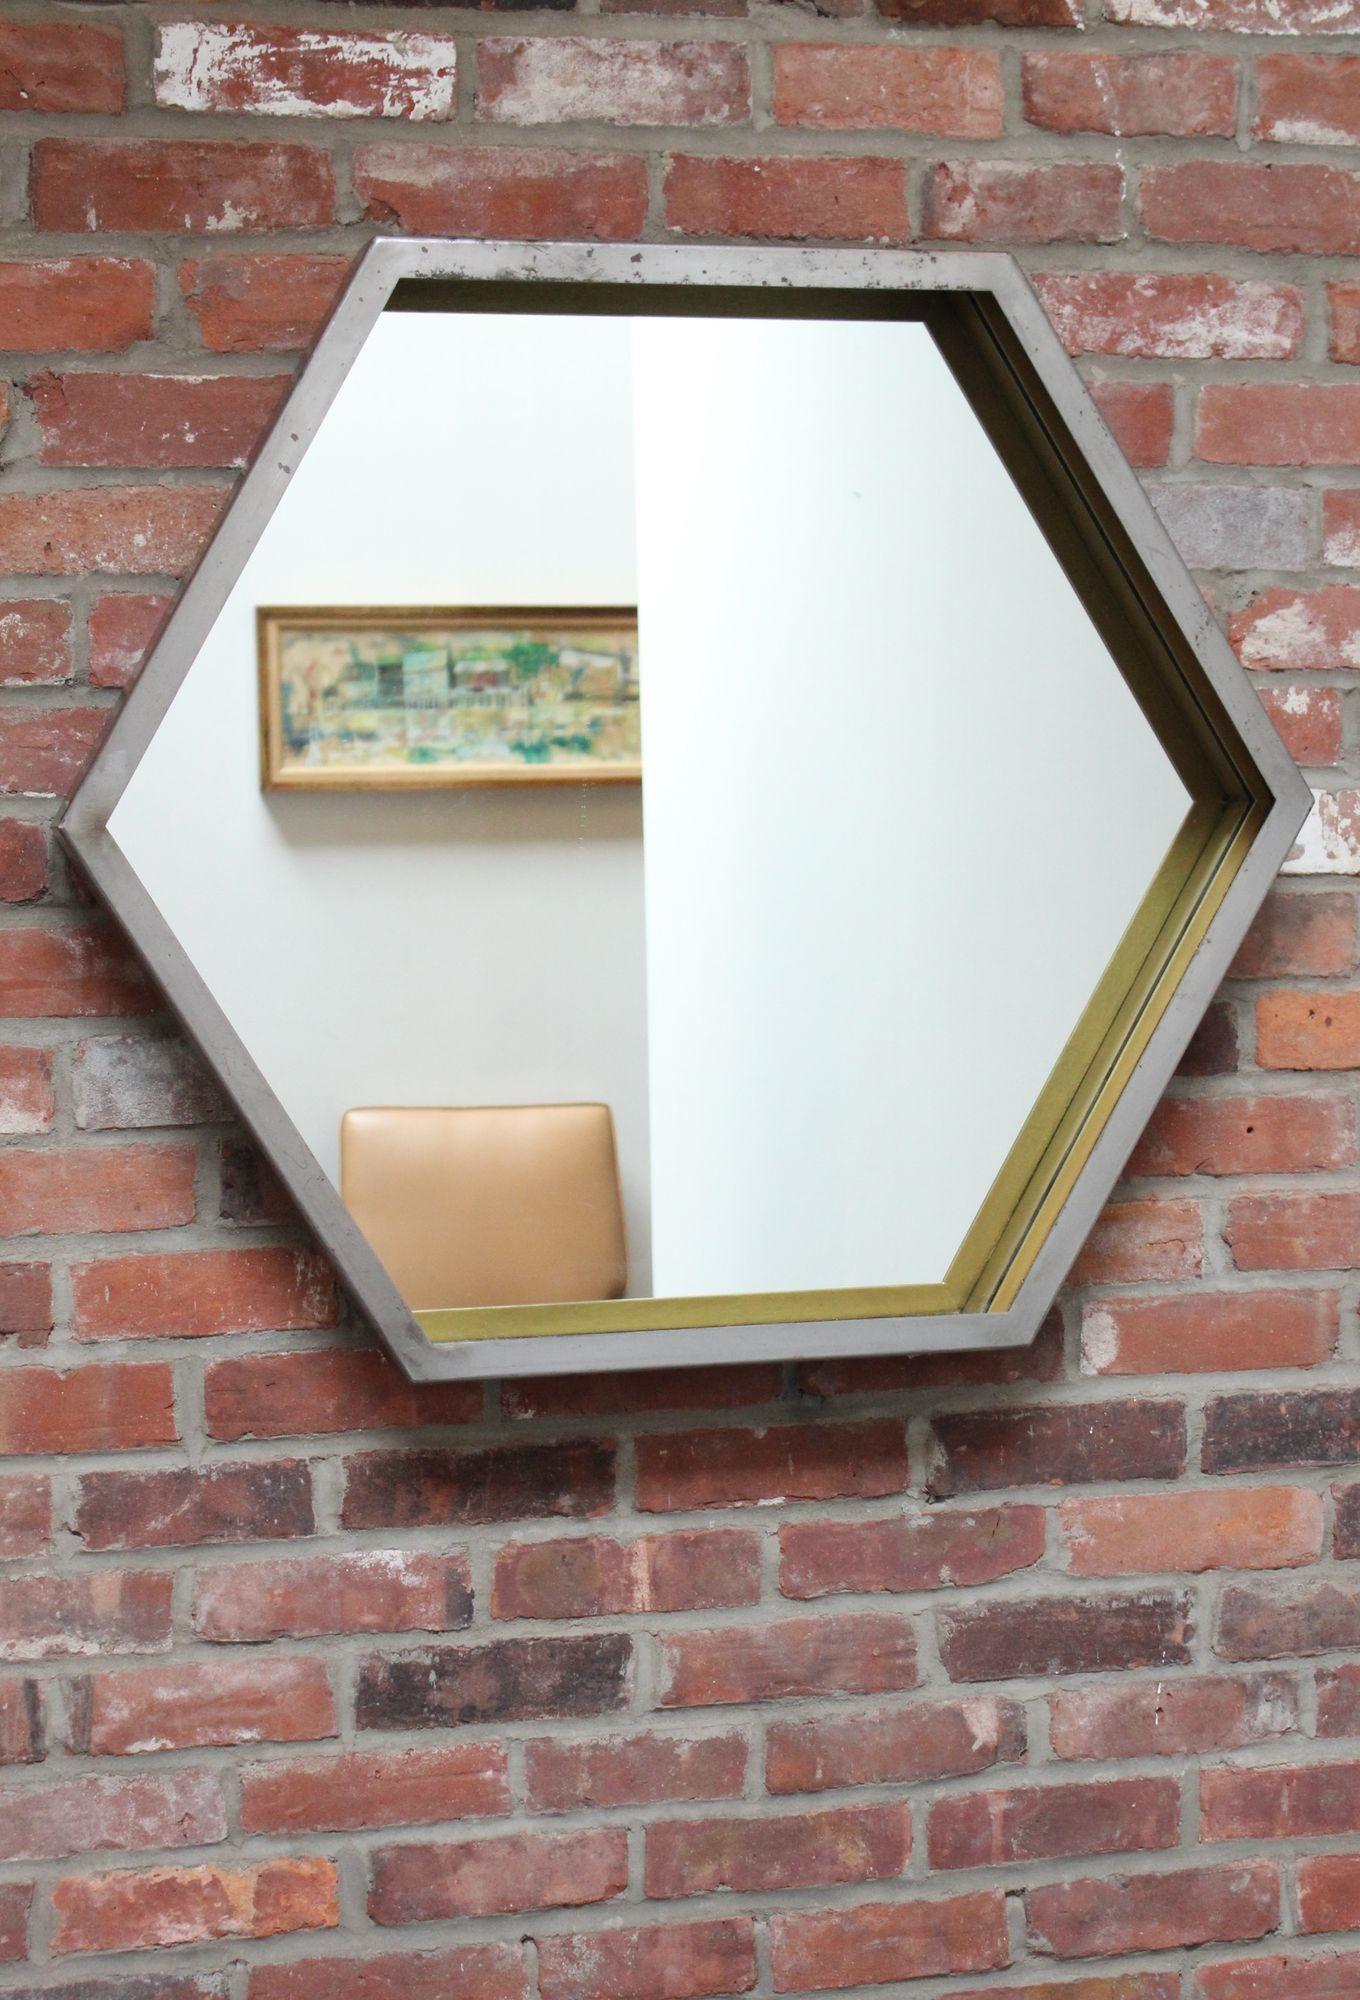 Zeitgenössischer Wandspiegel in sechseckiger Form, entworfen und hergestellt von Scott Behr, Industriedesigner und Künstler aus Brooklyn, NY. Maße: 29,75